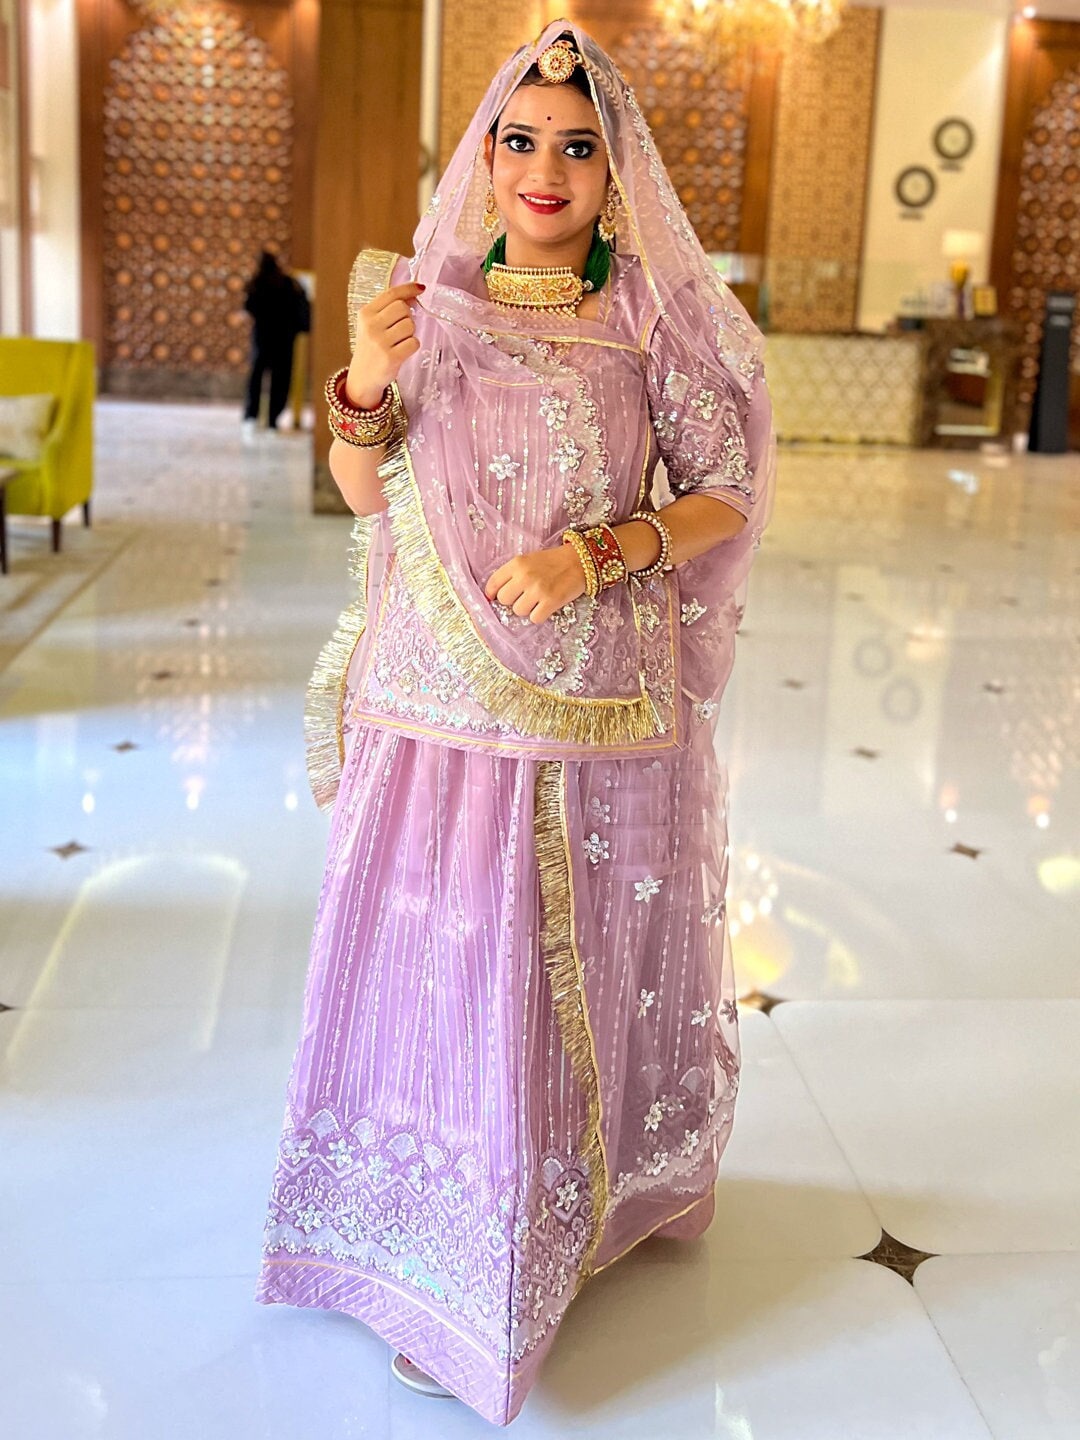 Dolly Jain - 'Rajputi Poshak' worn by Rajput ladies in... | Facebook